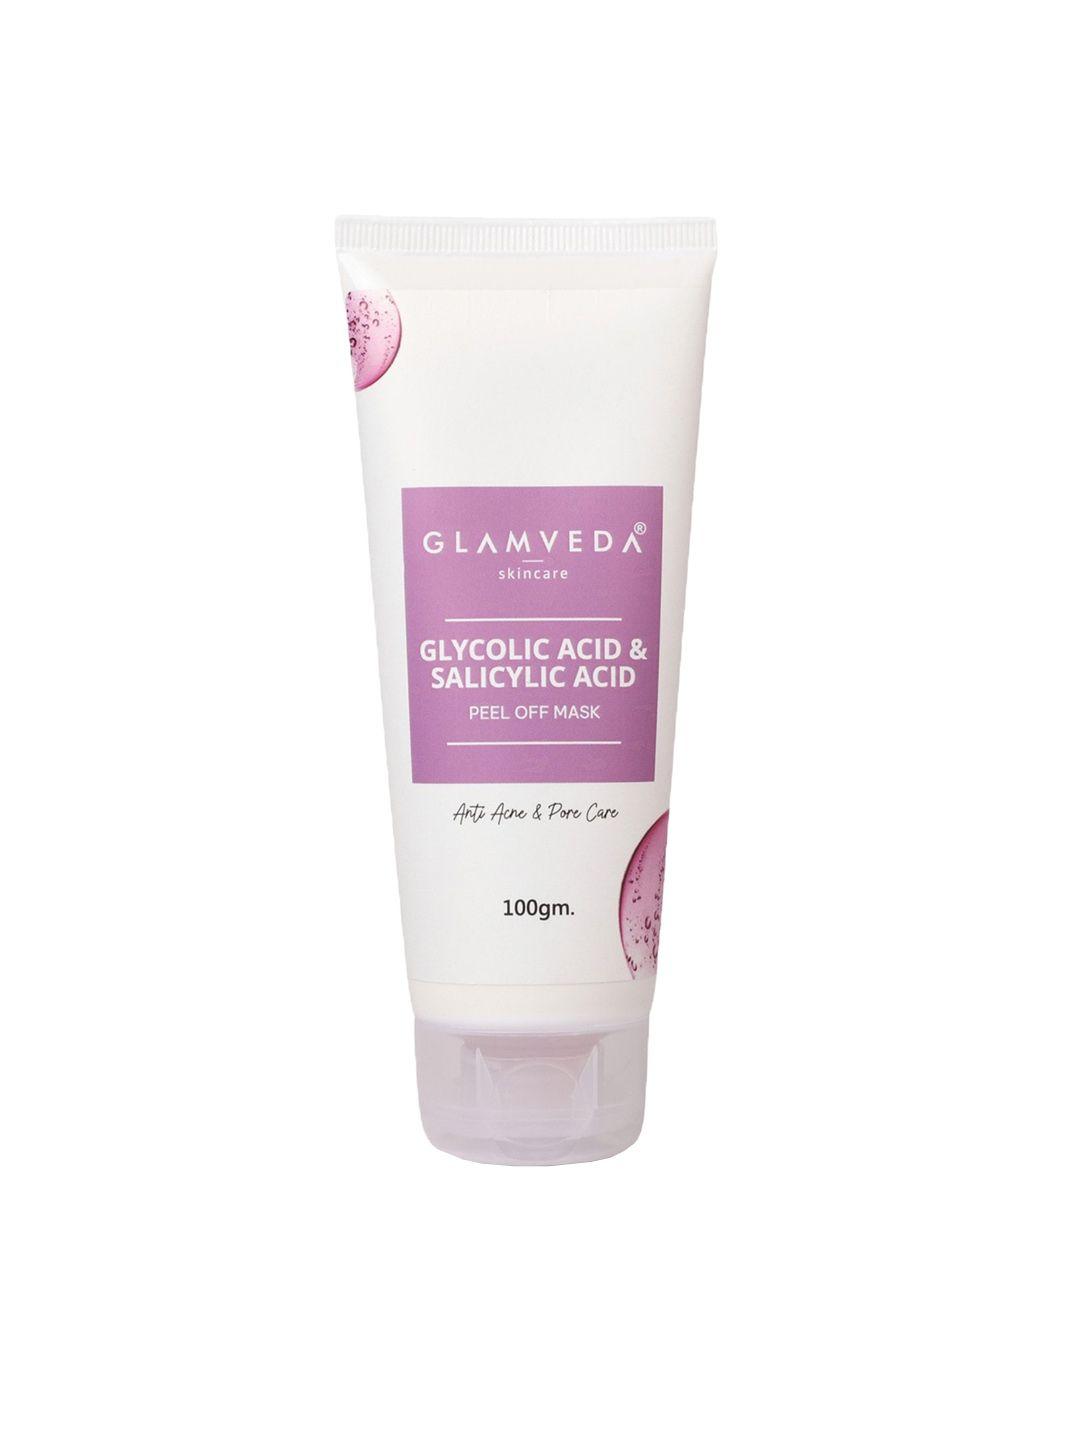 glamveda glycolic acid & salicylic acid anti acne & pore care peel off mask - 100 gm